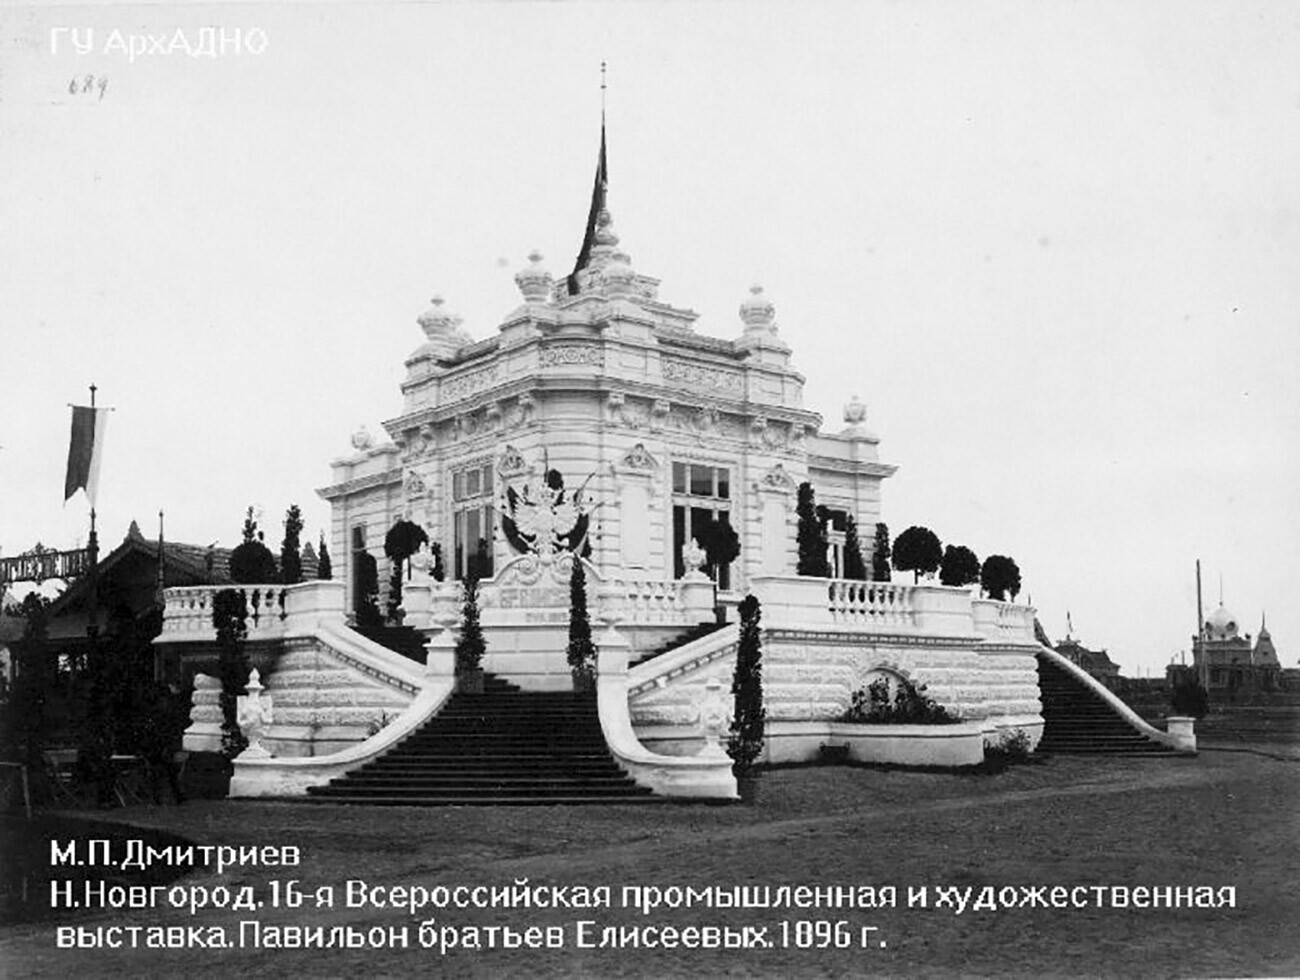 Paviliun Pedagang Yeliseyev